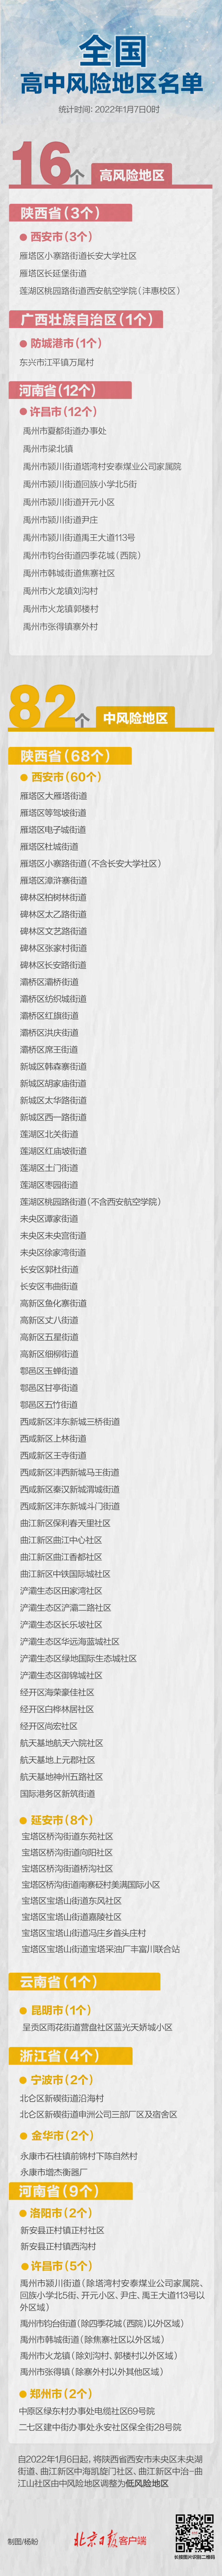 卫星照曝光！美军开建新基地 - Baidu Search - PeraPlay.Net 百度热点快讯